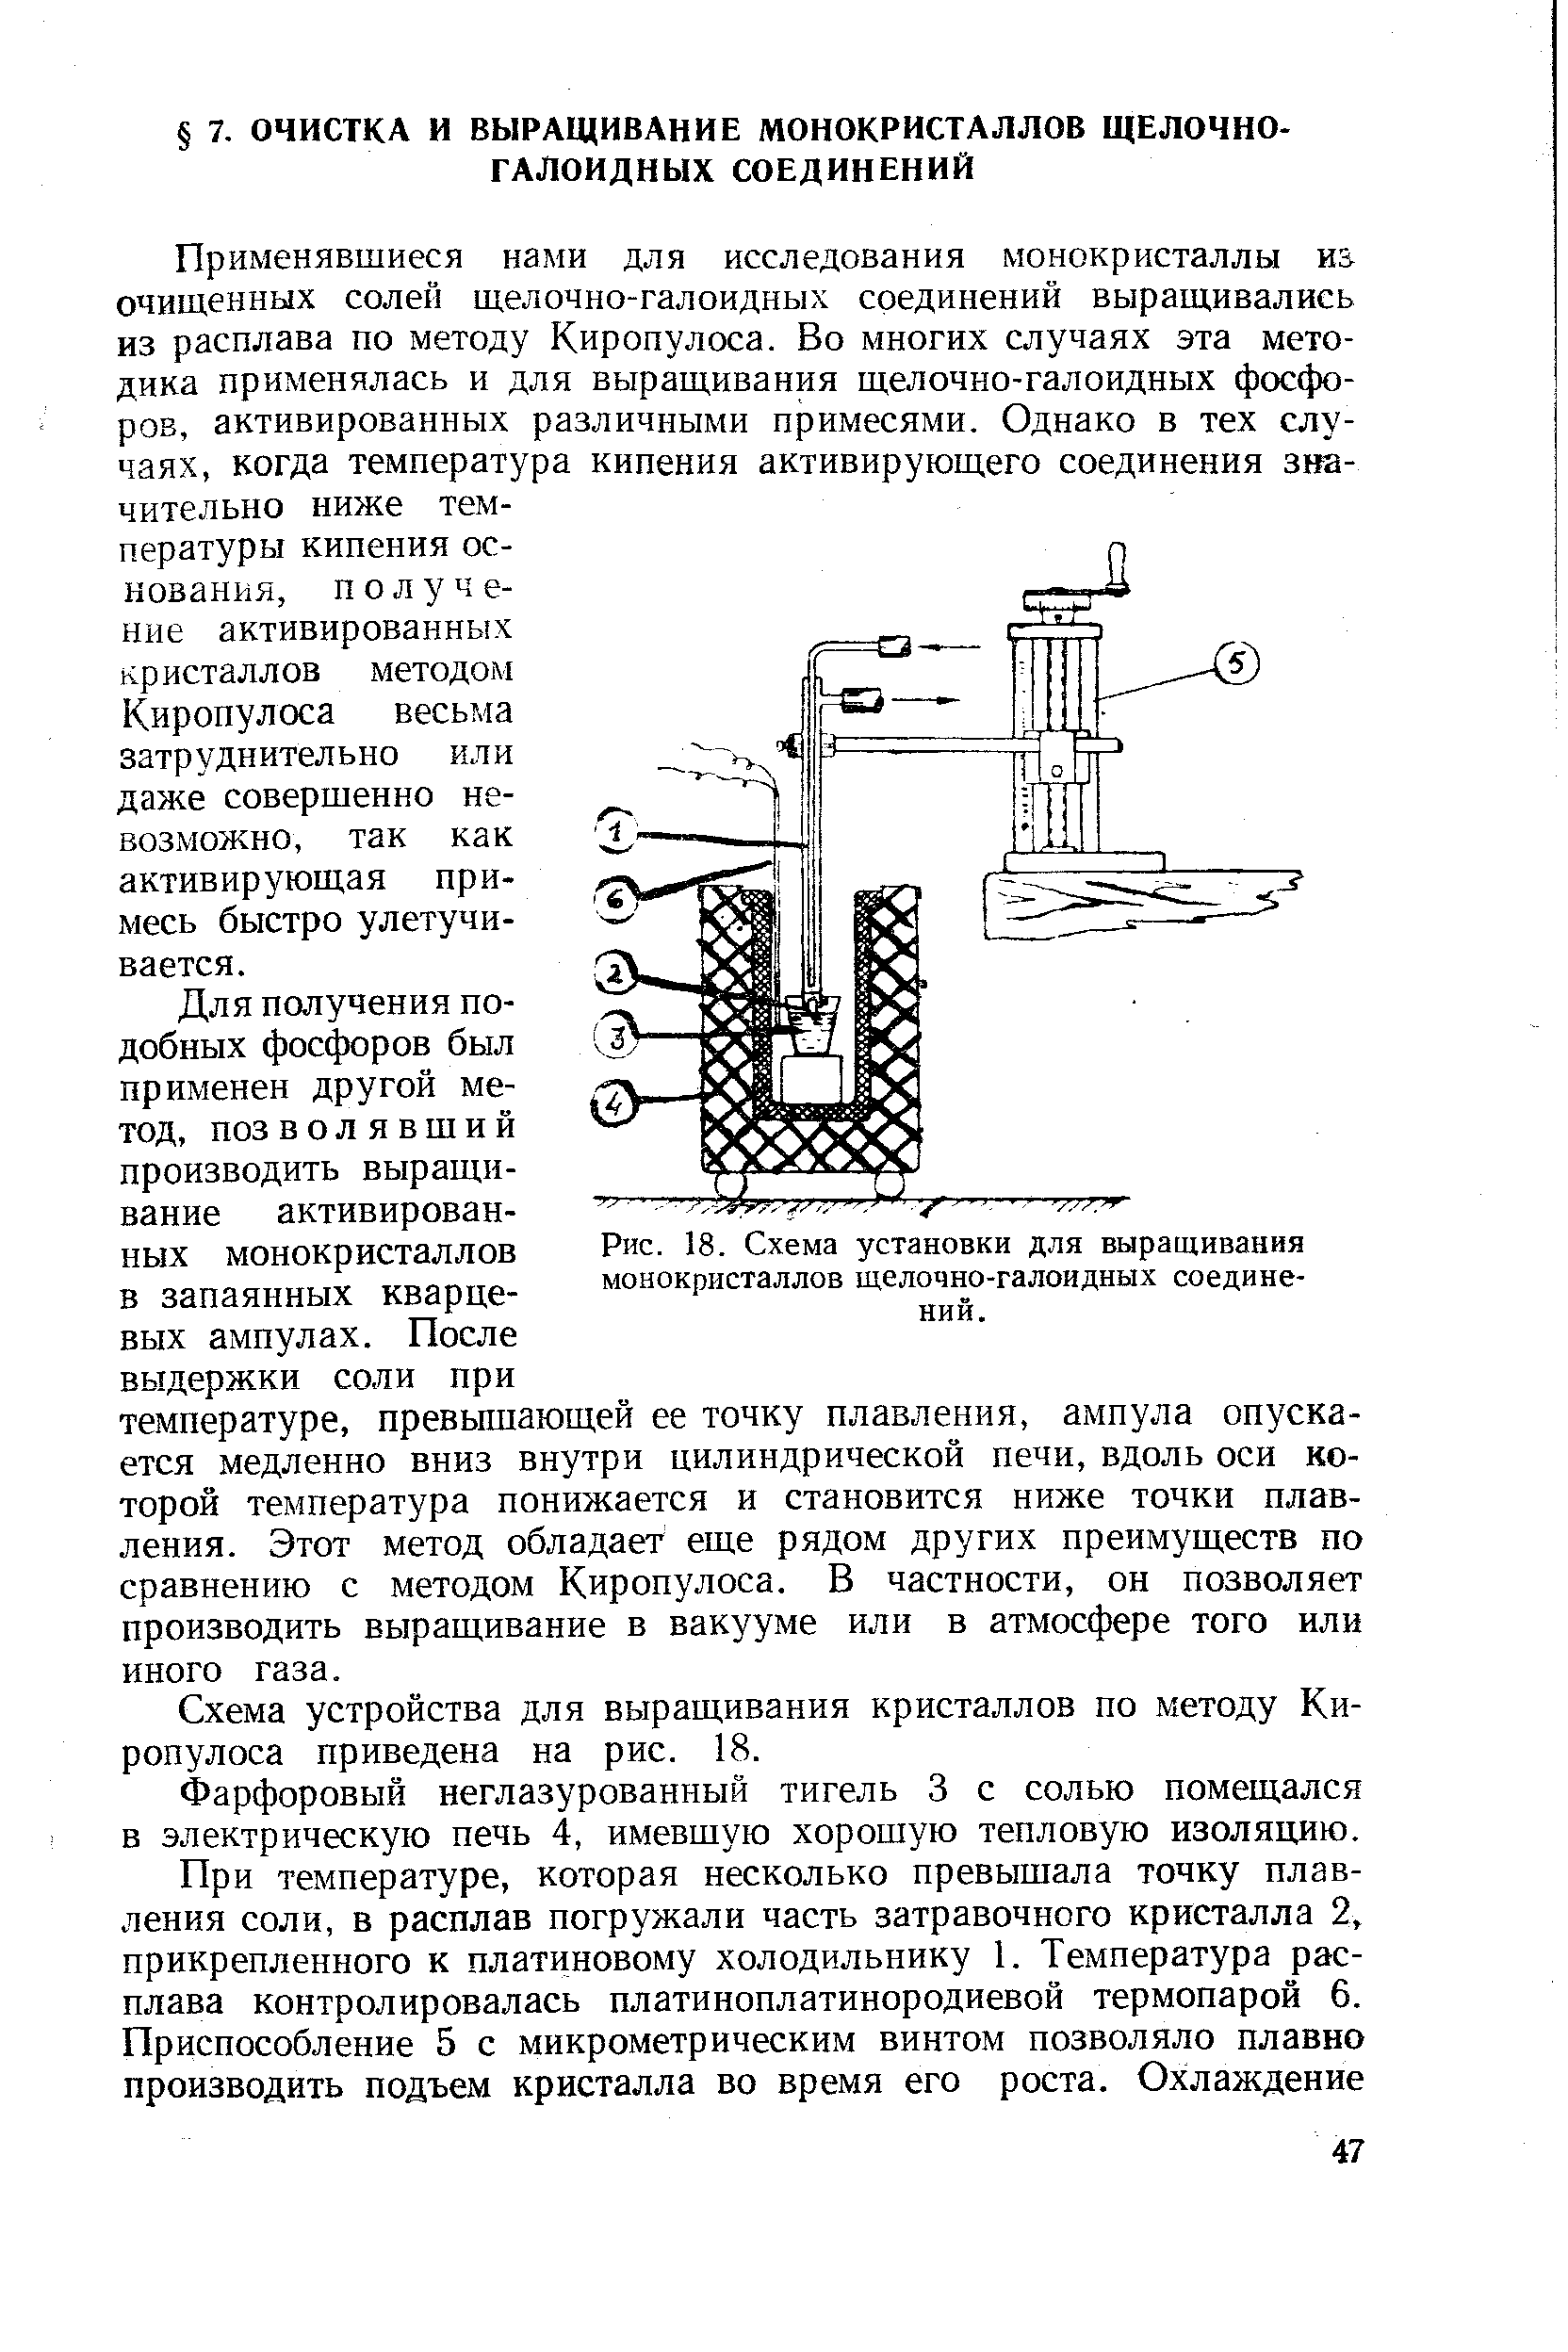 Рис. 18. Схема установки для <a href="/info/17905">выращивания монокристаллов</a> щелочно-галоидных соединений.
